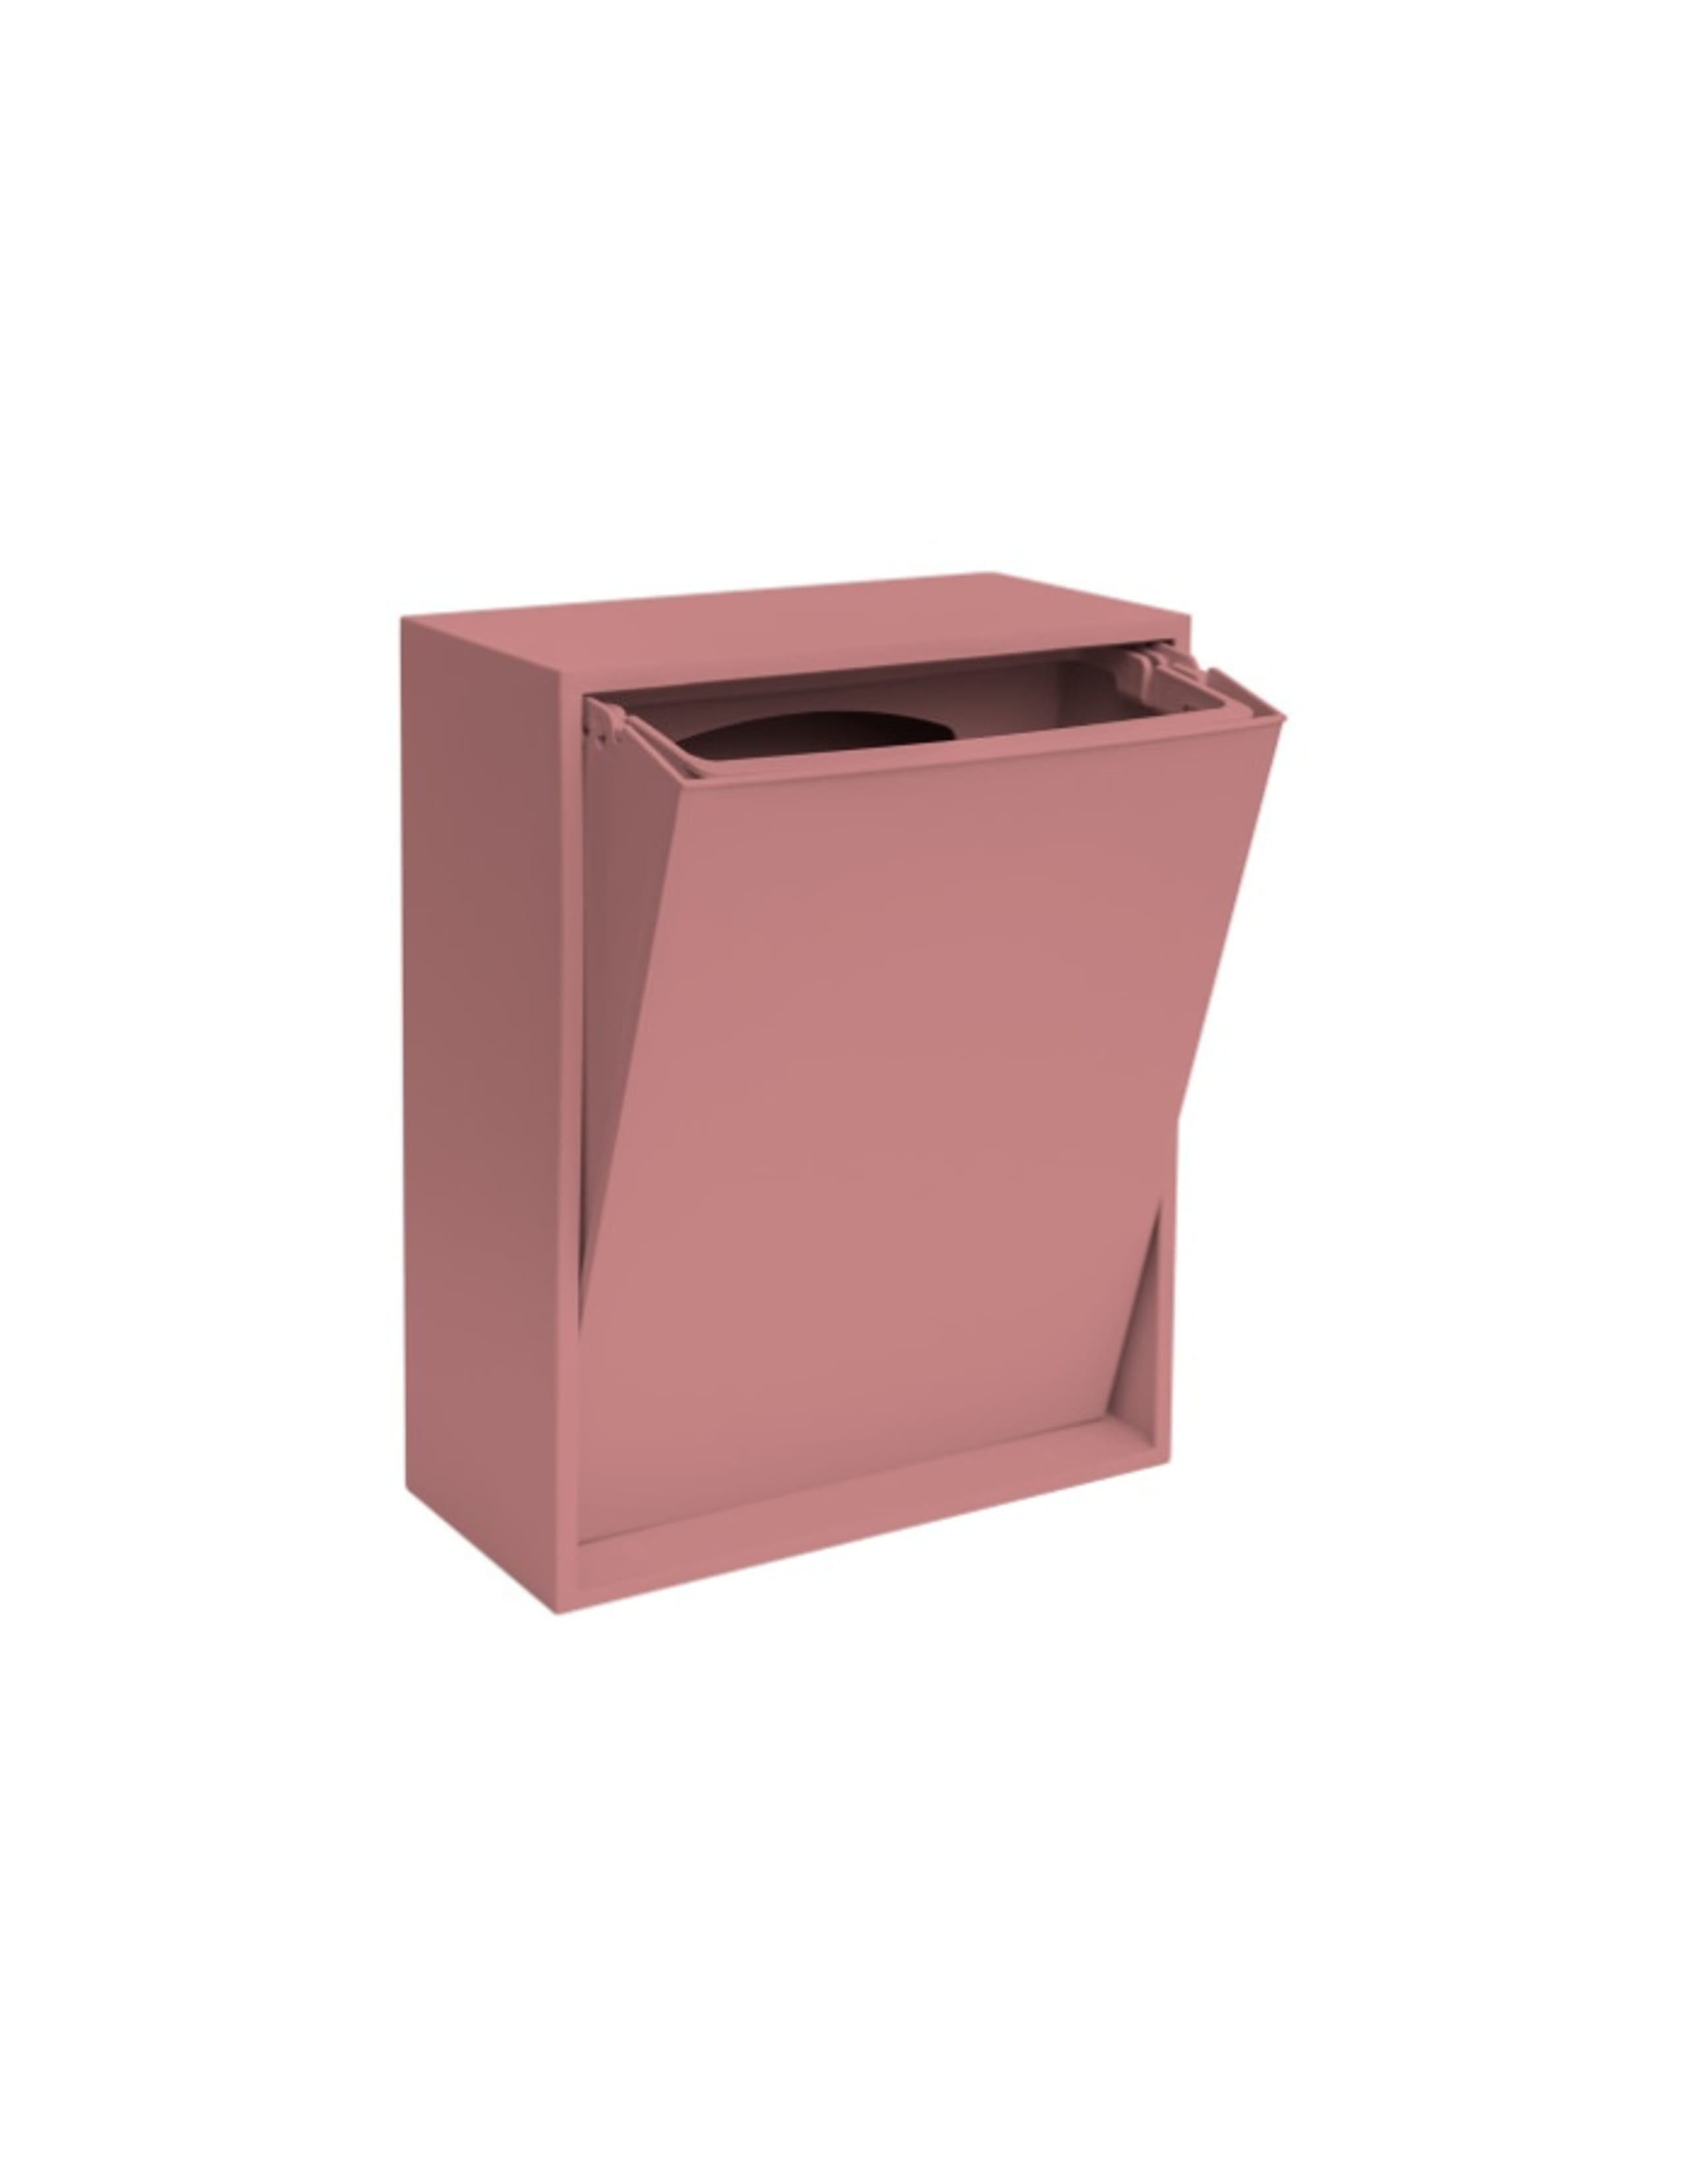 ReCollector - Boxen - Recycling Box - Ash Rose